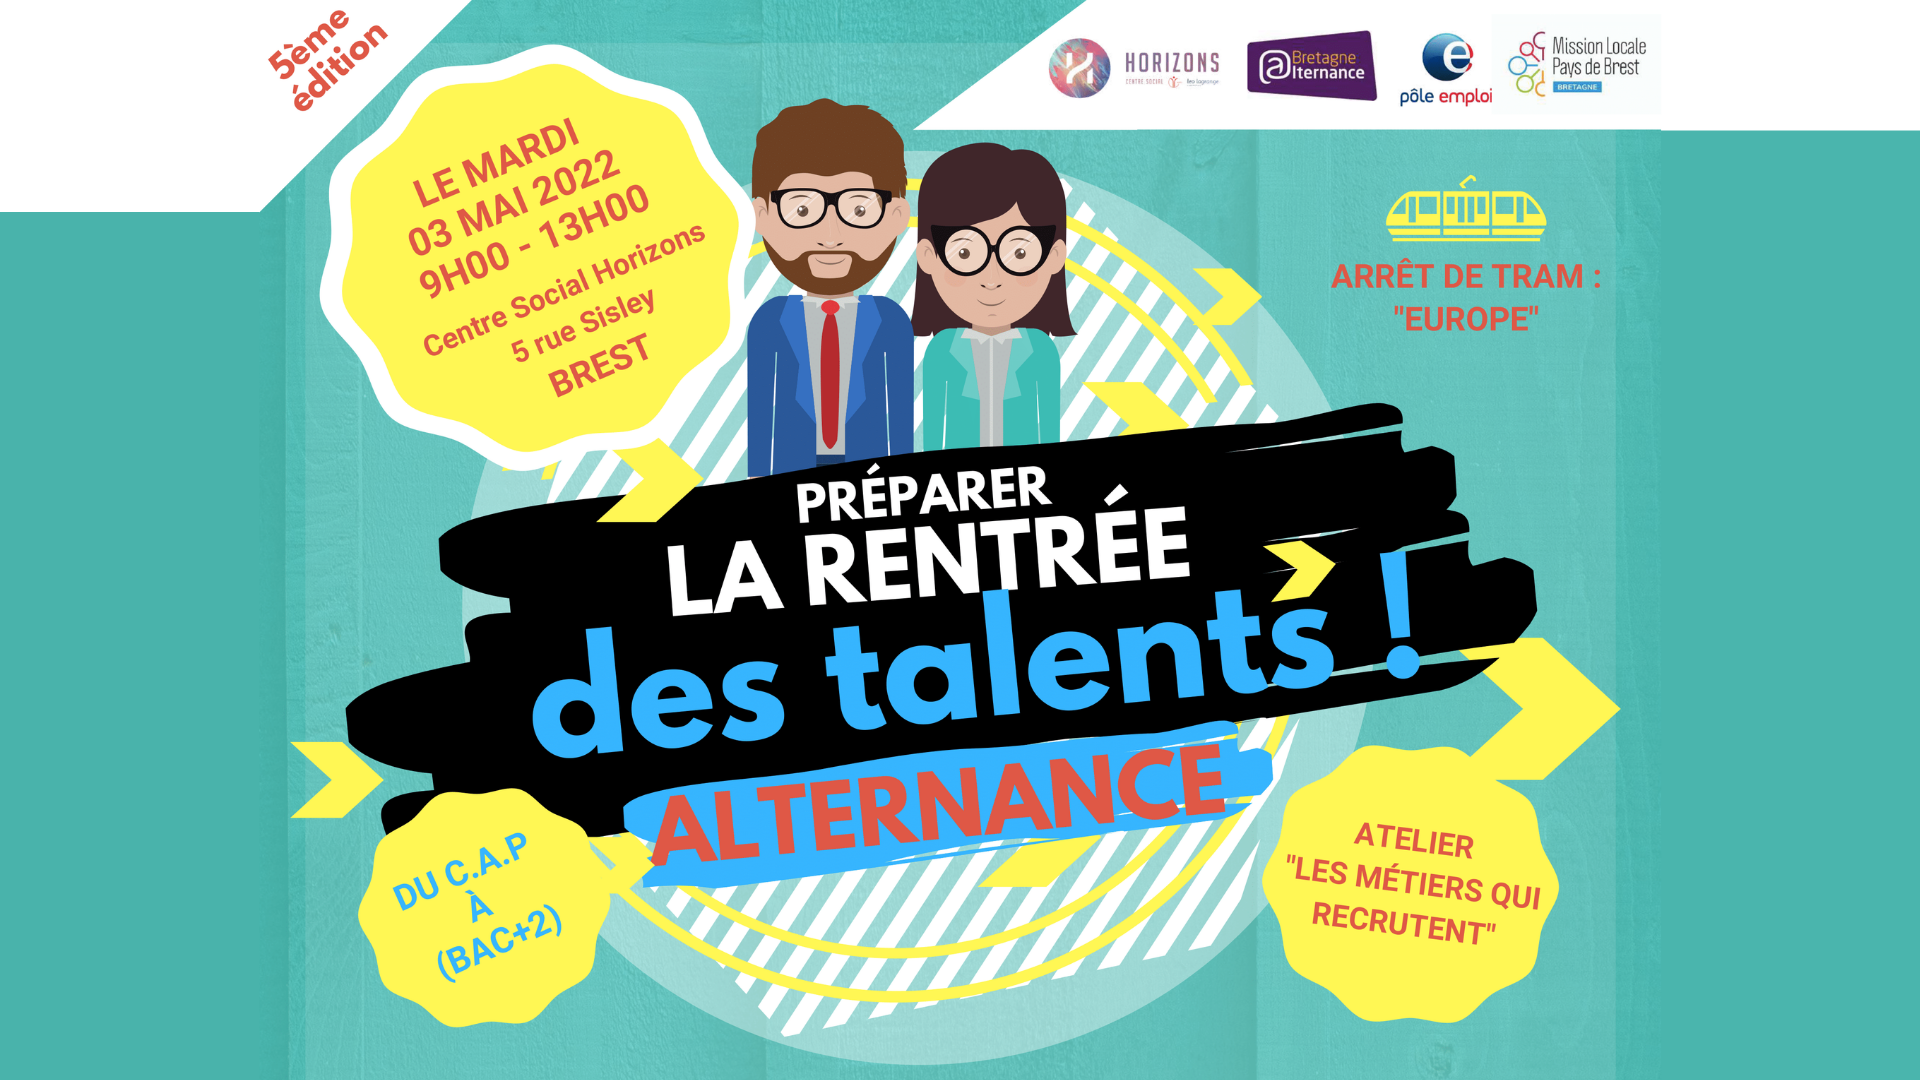 You are currently viewing La cinquième édition de la « Rentrée des talents » le Mardi 3 Mai au Centre Social !